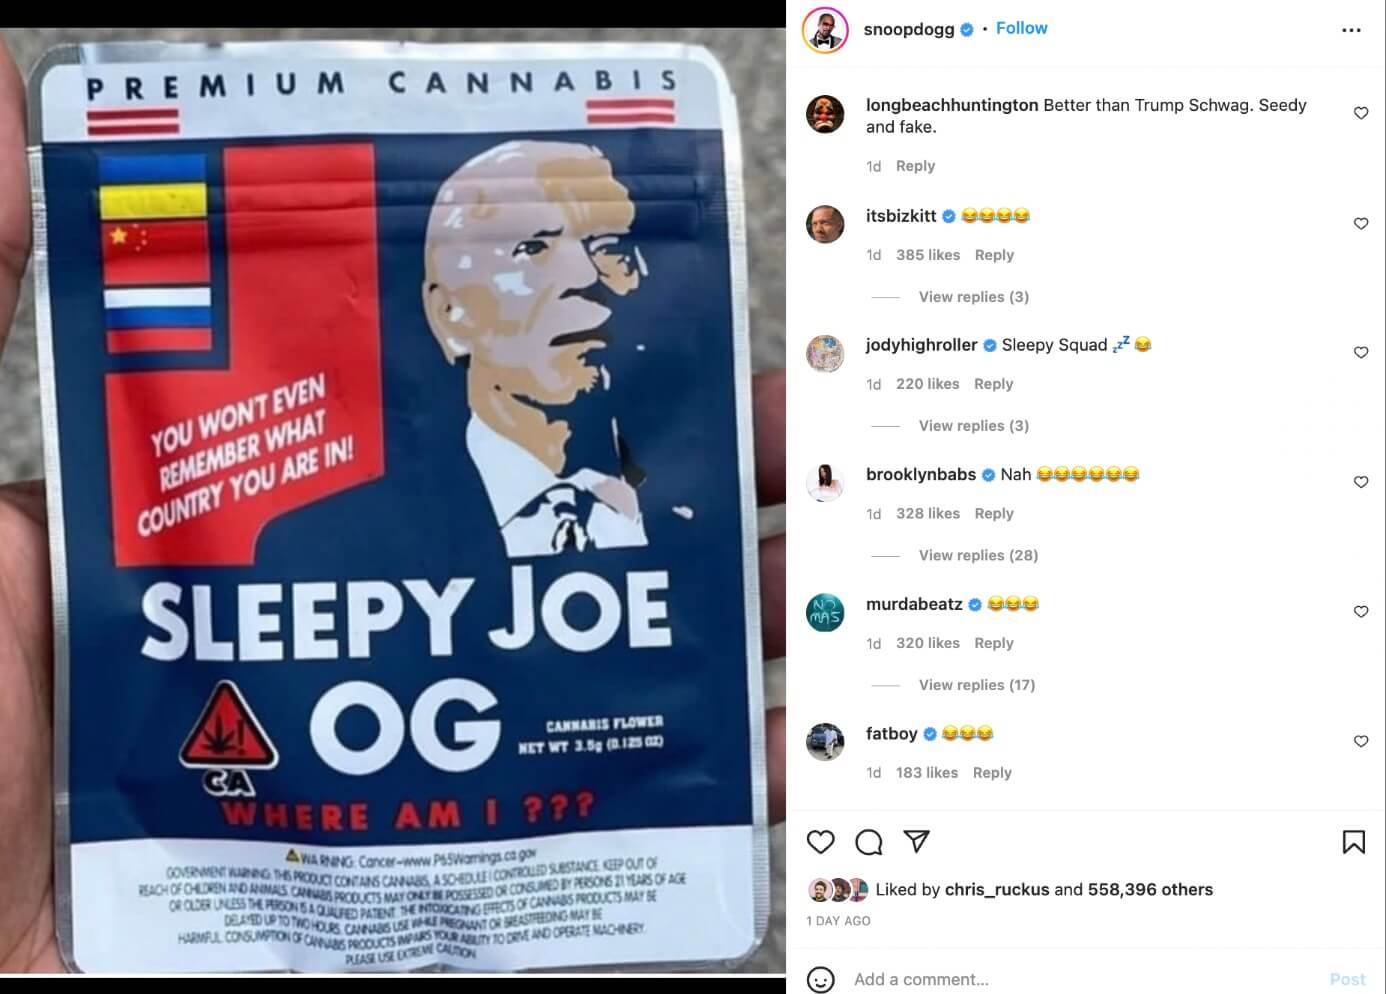 Snoop Dogg trolls Joe Biden with 'Sleepy Joe OG'